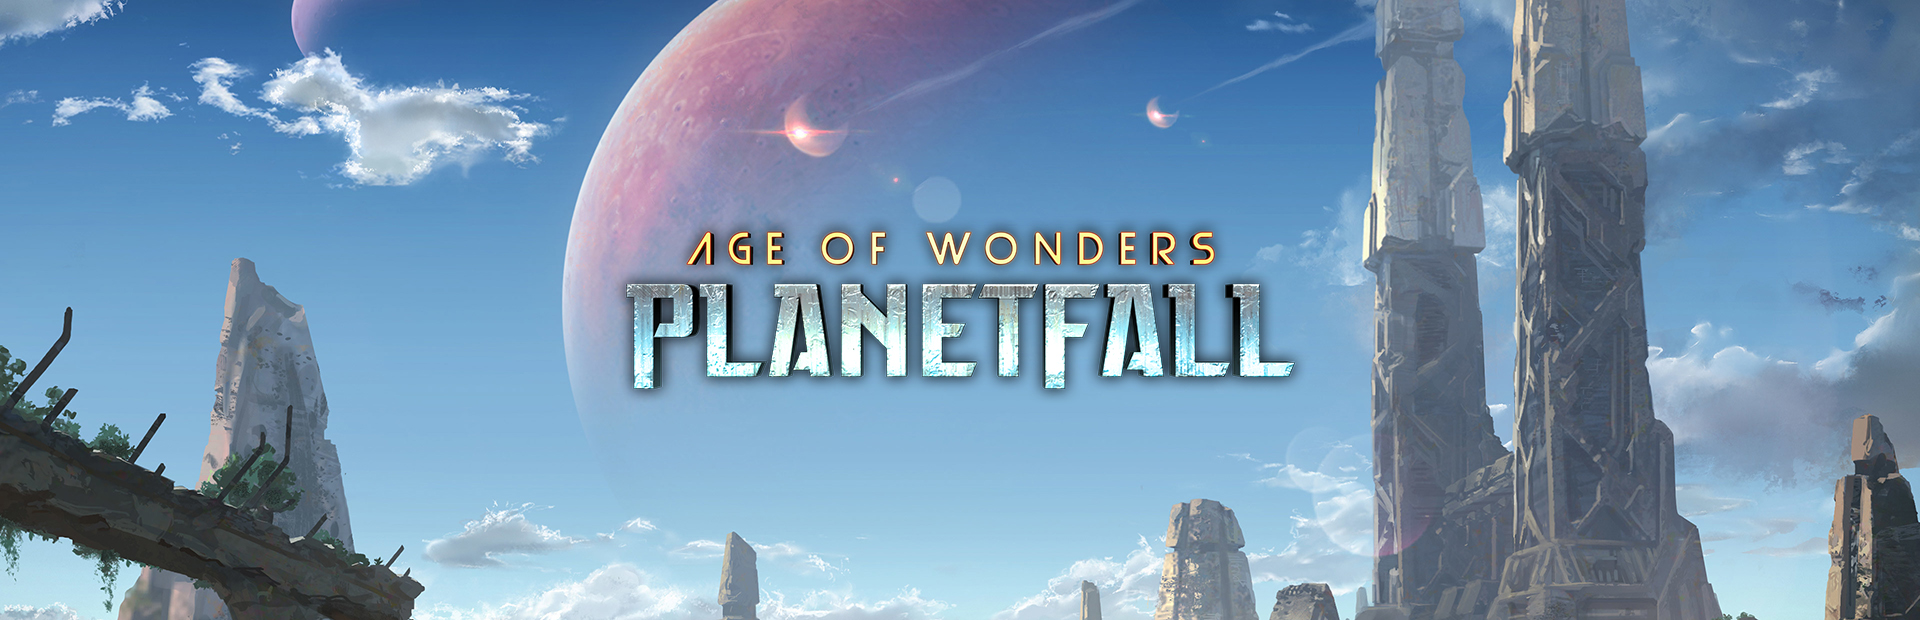 دانلود بازی Age of Wonders: Planetfall برای PC | گیمباتو